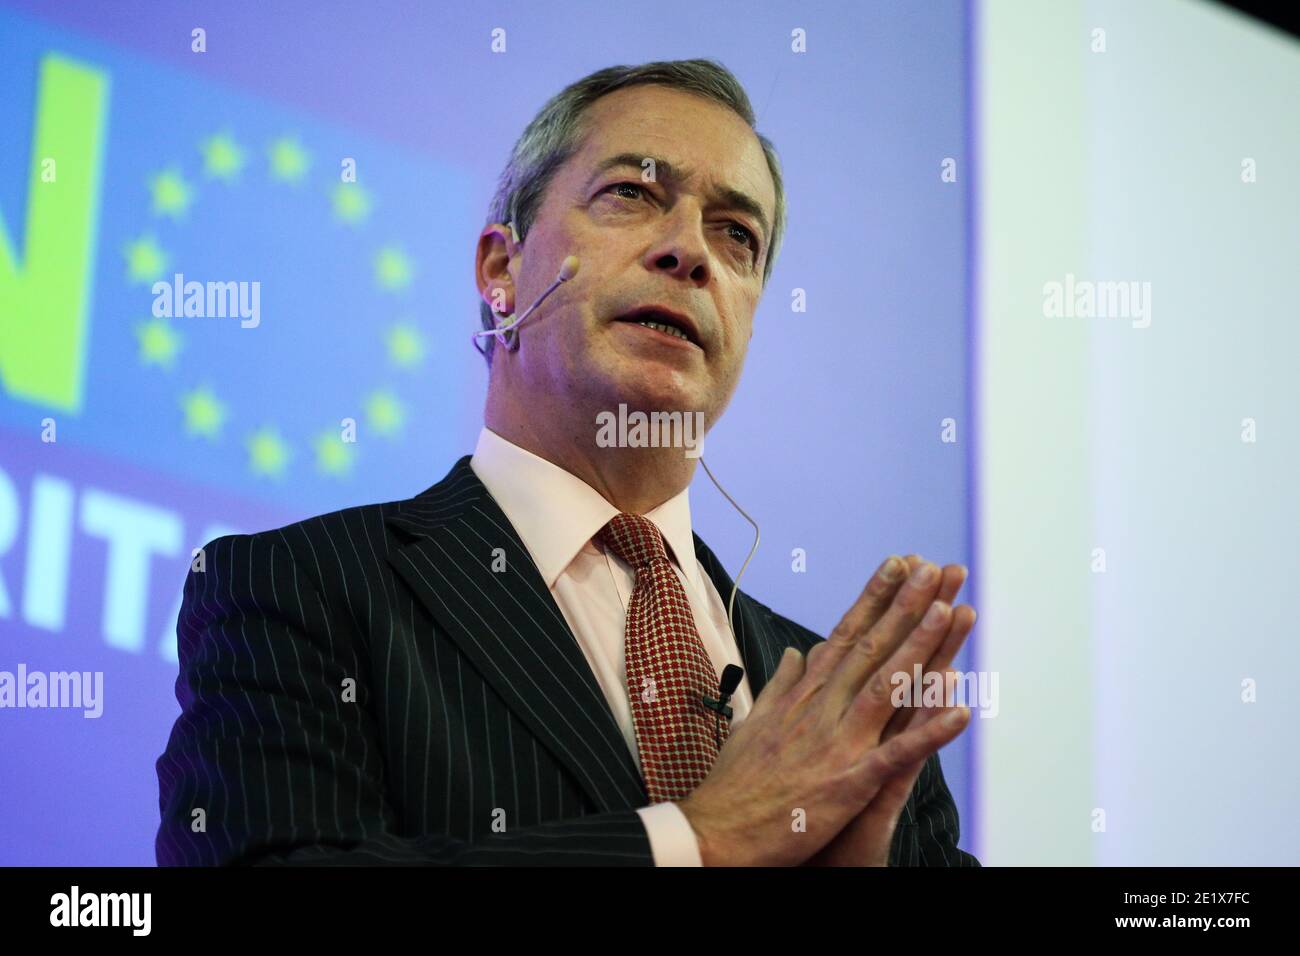 30/11/15. Leeds, Reino Unido. Nigel Farage habla en un evento "no a la UE" en Eland Road en Leeds, West Yorkshire, en el período previo al referéndum de la UE. Foto de stock